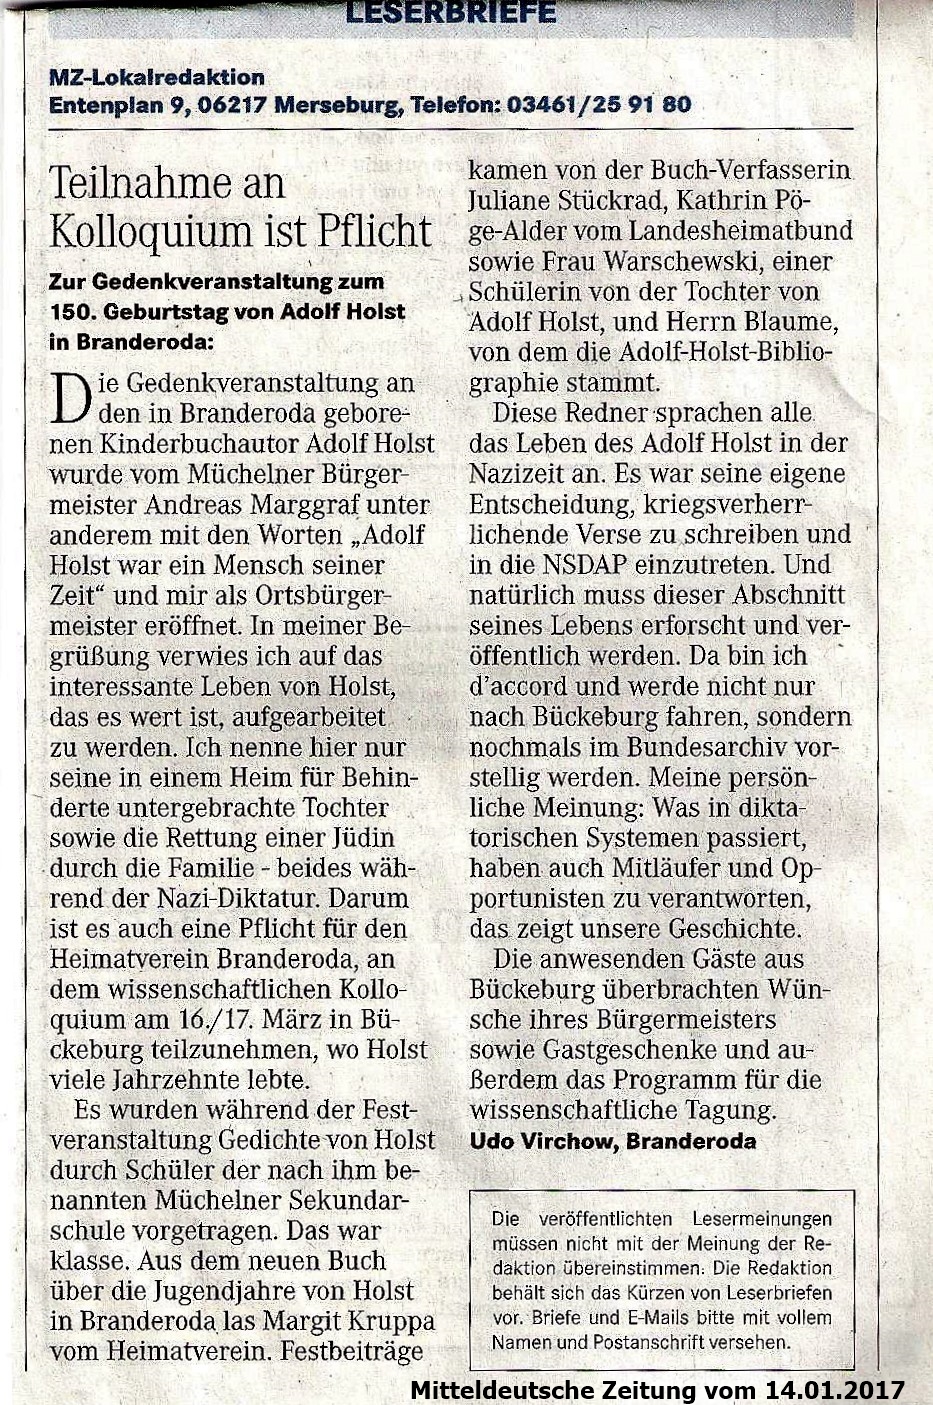 Teilnahme an Kolloquium ist Pflicht - Zur Gedenkveranstaltung zum 150. Geburtstag von Adolf Holst in Branderoda, Mitteldeutsche Zeitung, Merseburg vom 14.01.2017